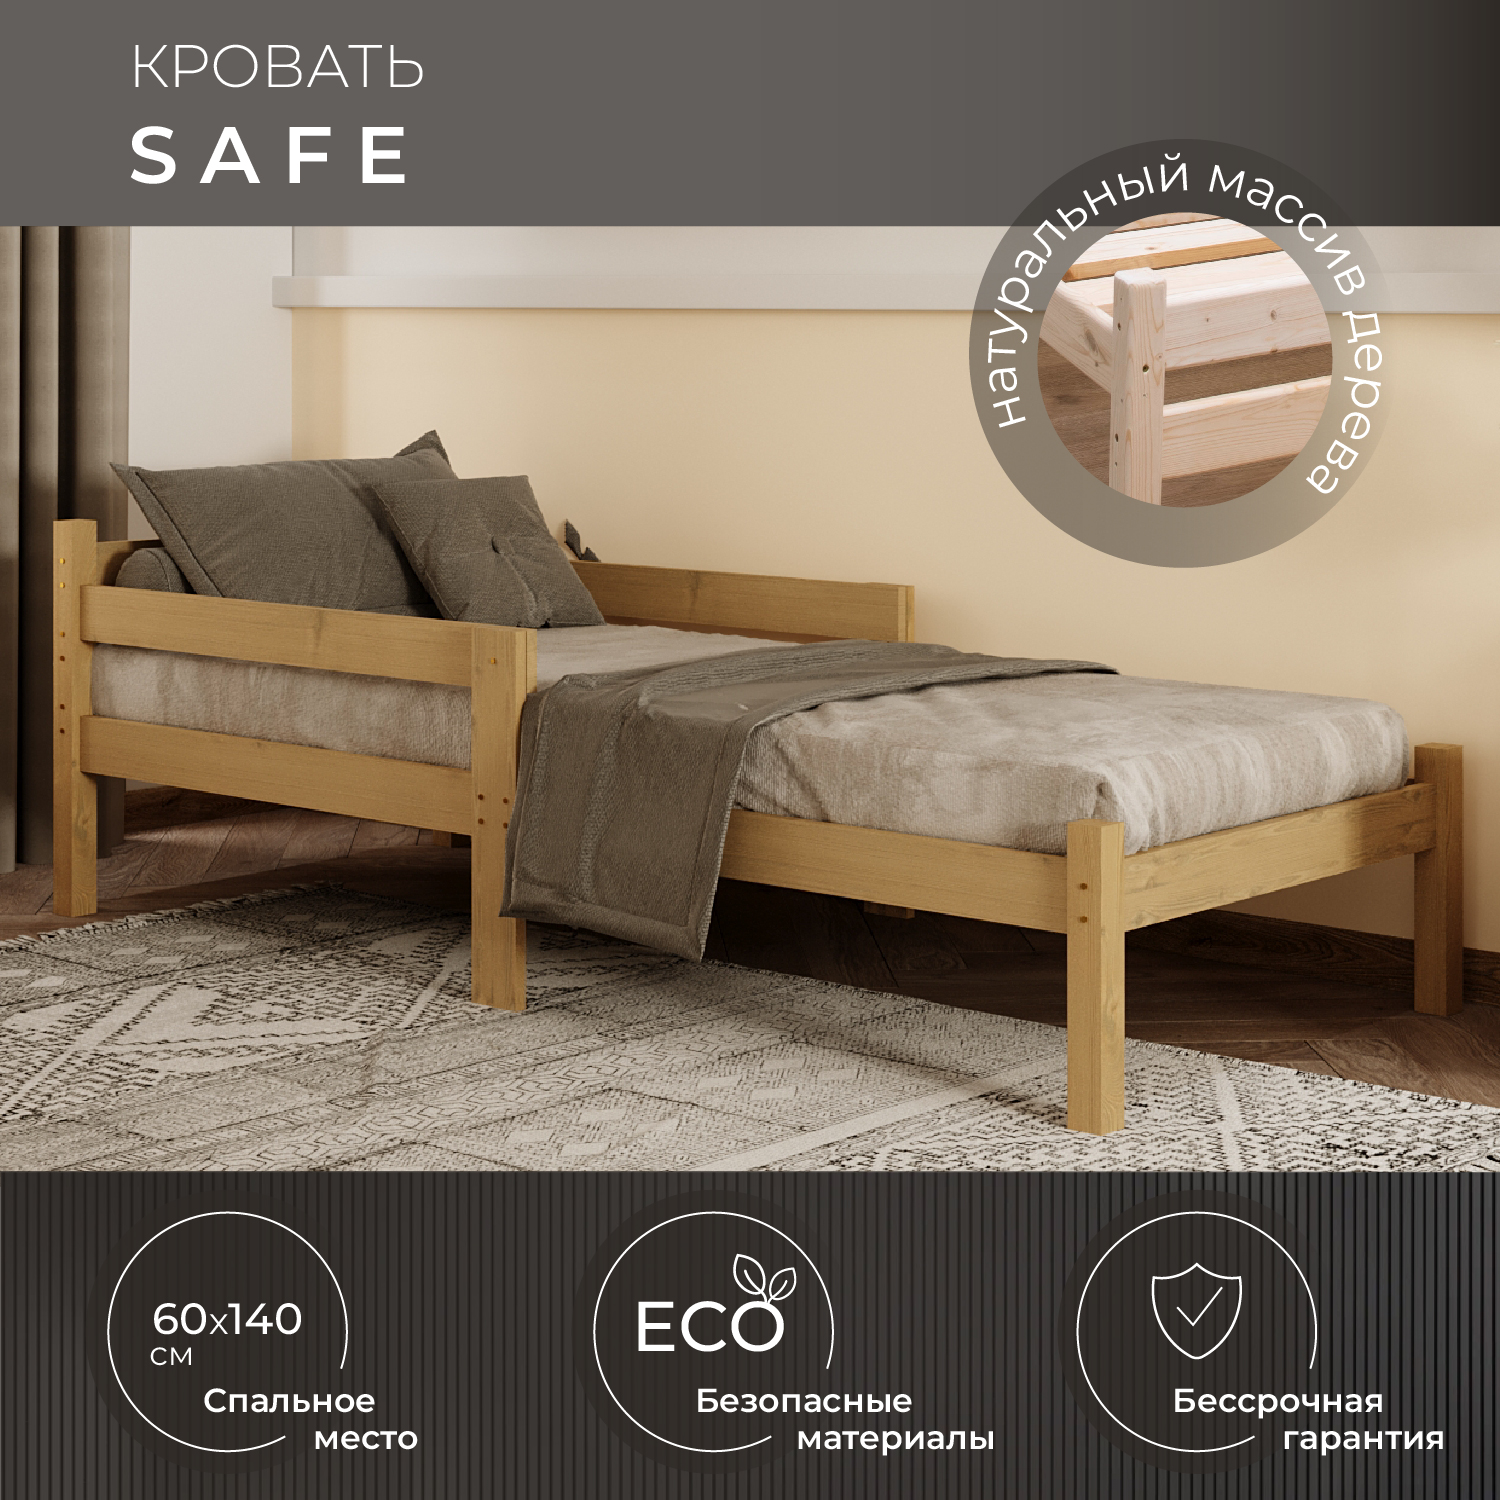 Кровать Новирон Safe 60x140 см